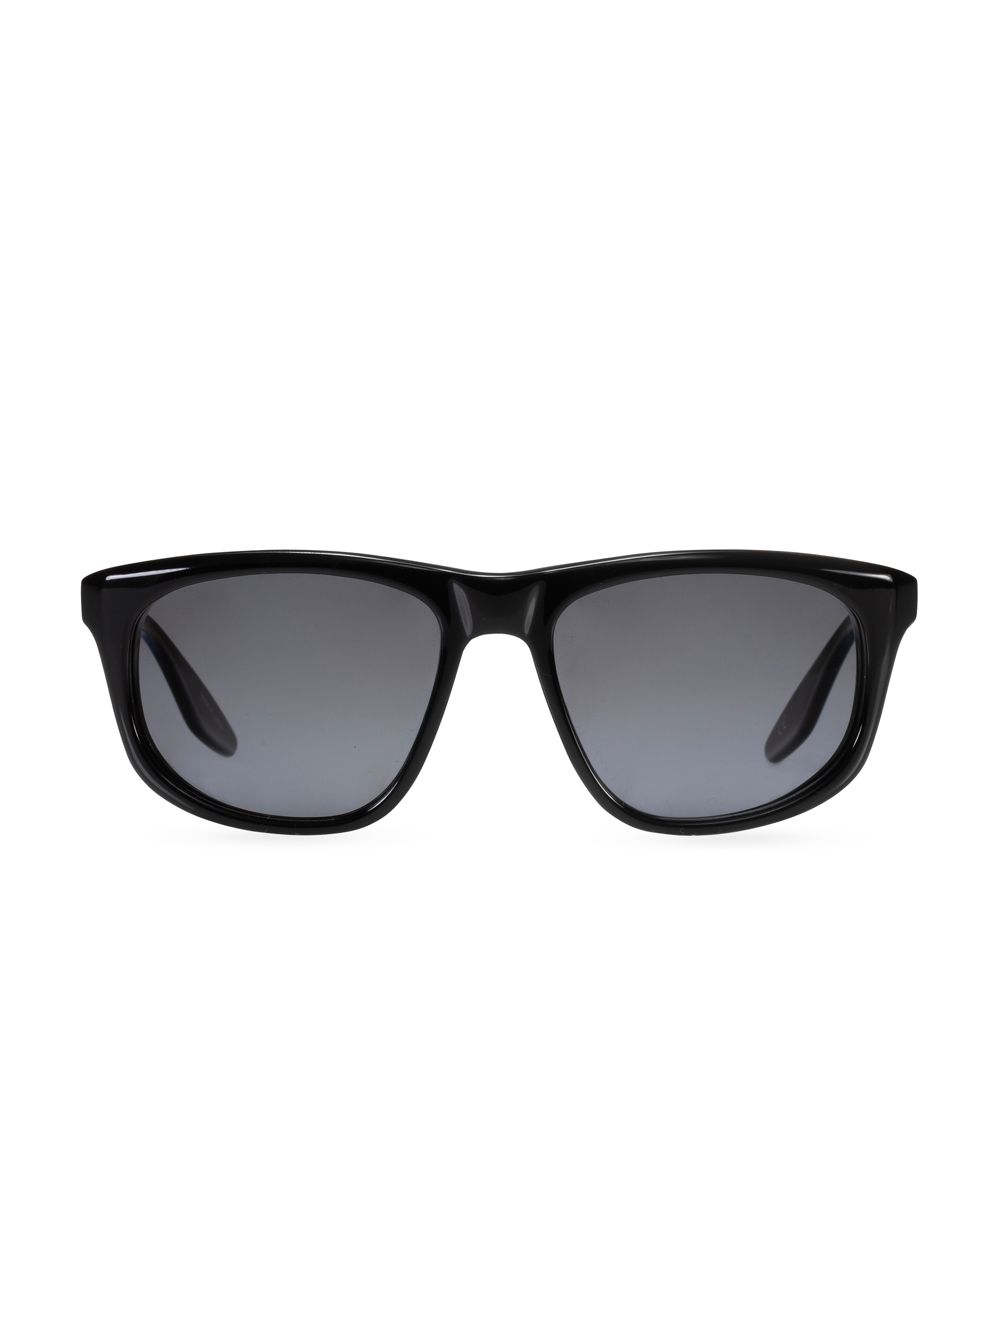 Солнцезащитные очки Barton Perreira X 007 Legacy Goldfinger Wrap 55MM Barton Perreira, черный